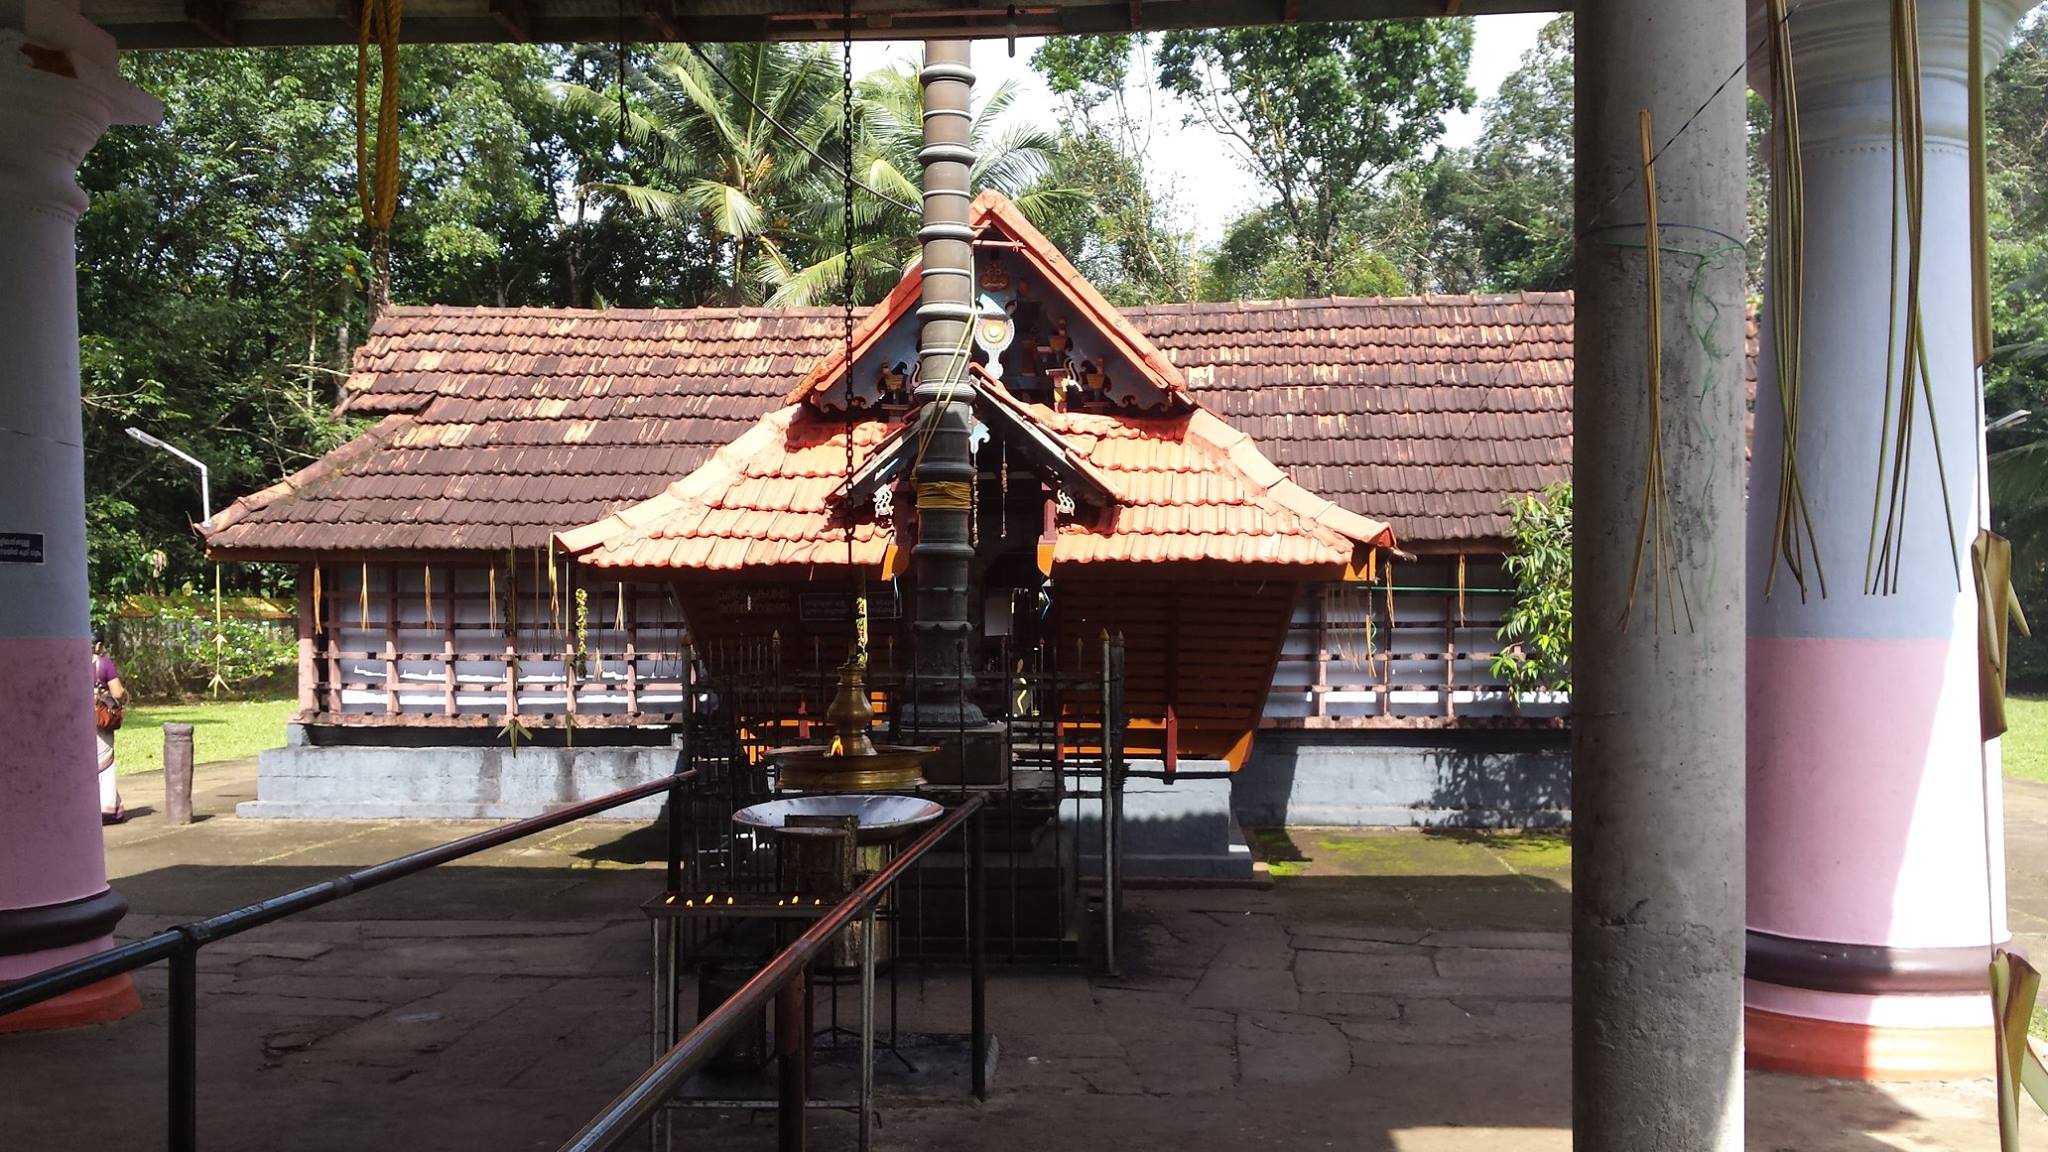 Poovarany Mahadeva Temple